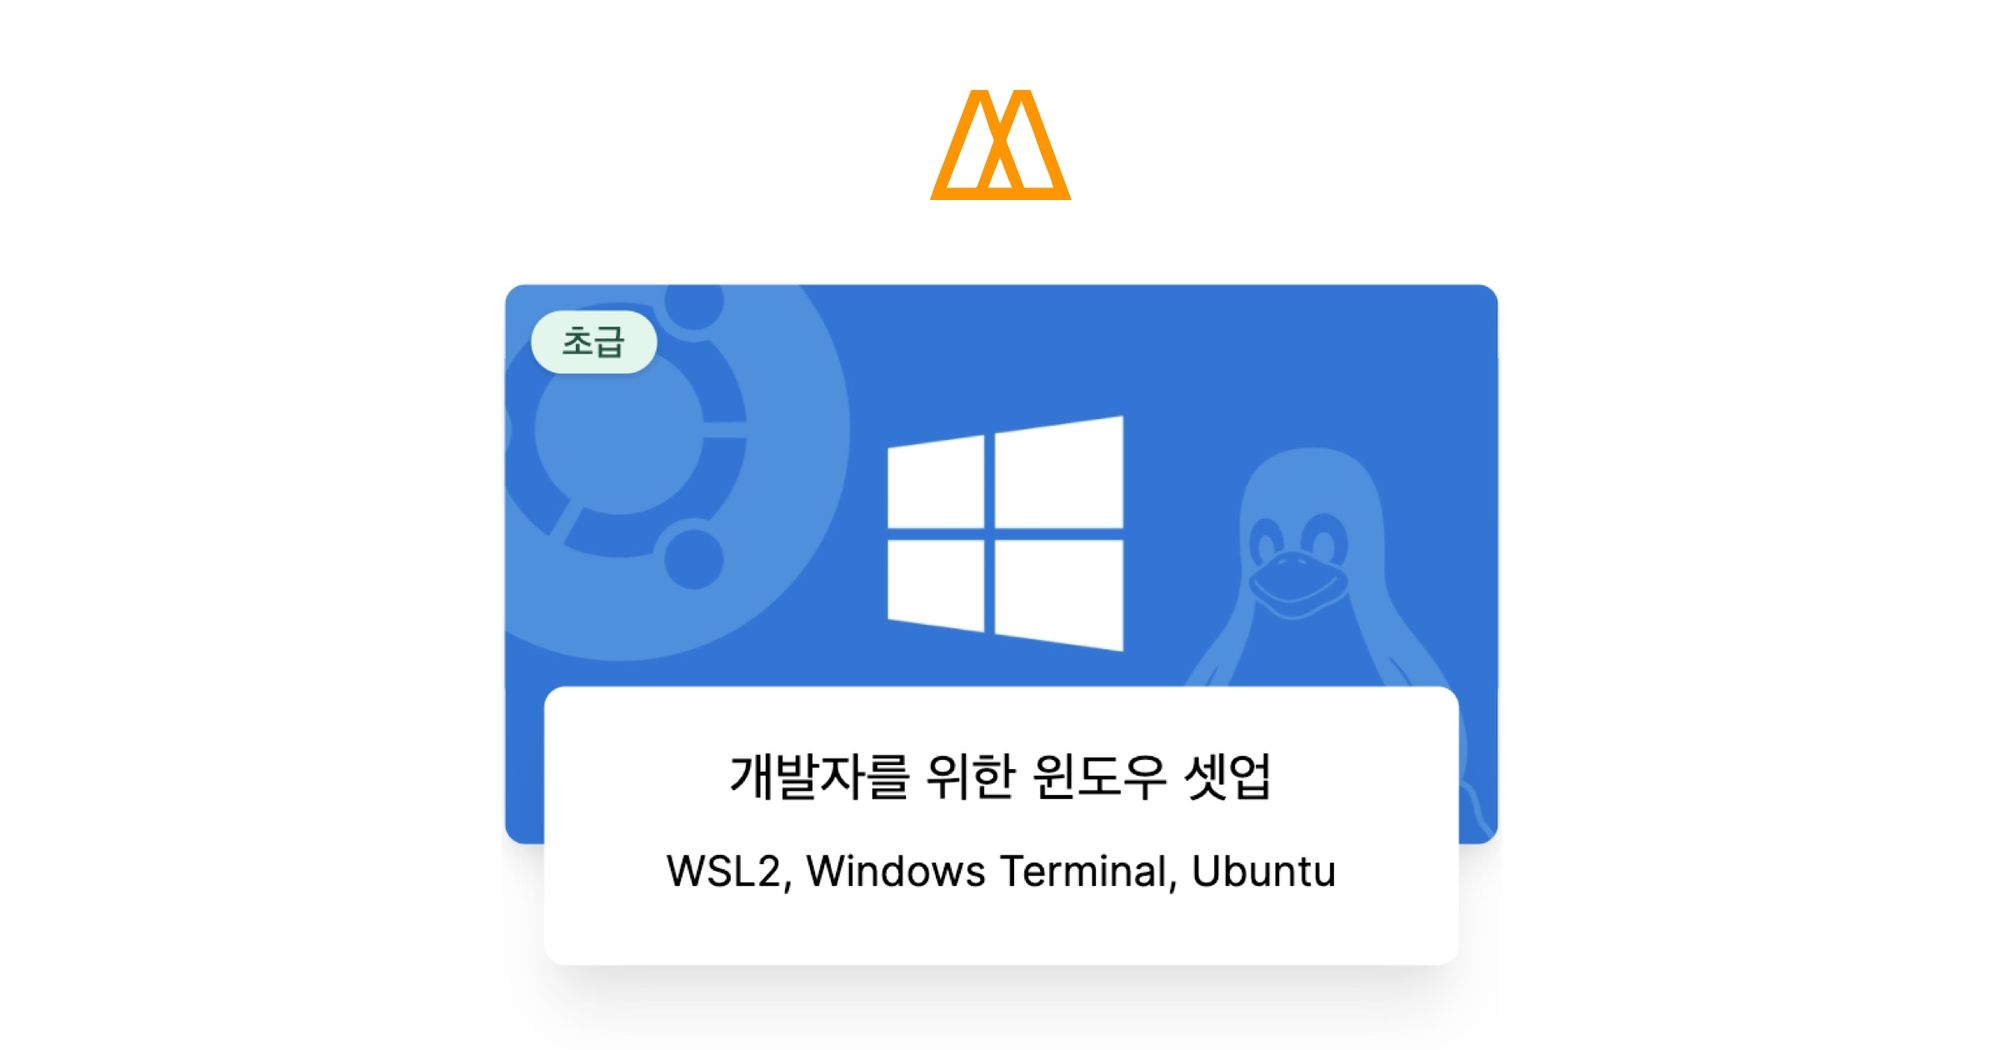 개발자를 위한 윈도우 셋업 - 노마드 코더 Nomad Coders